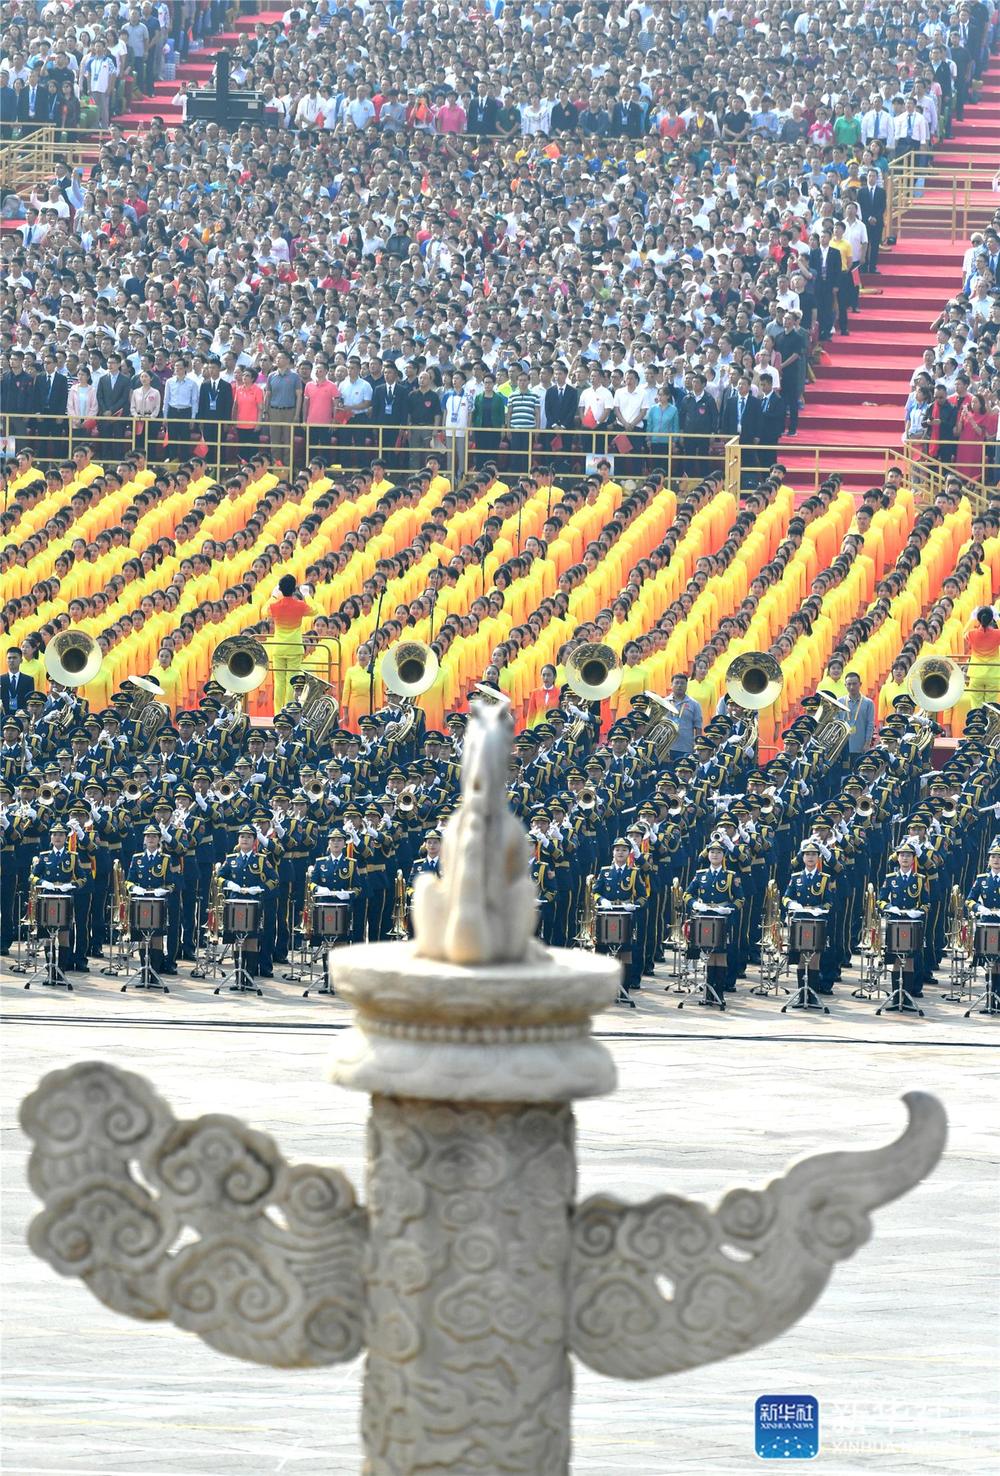 庆祝中华人民共和国成立70周年大会在京隆重举行